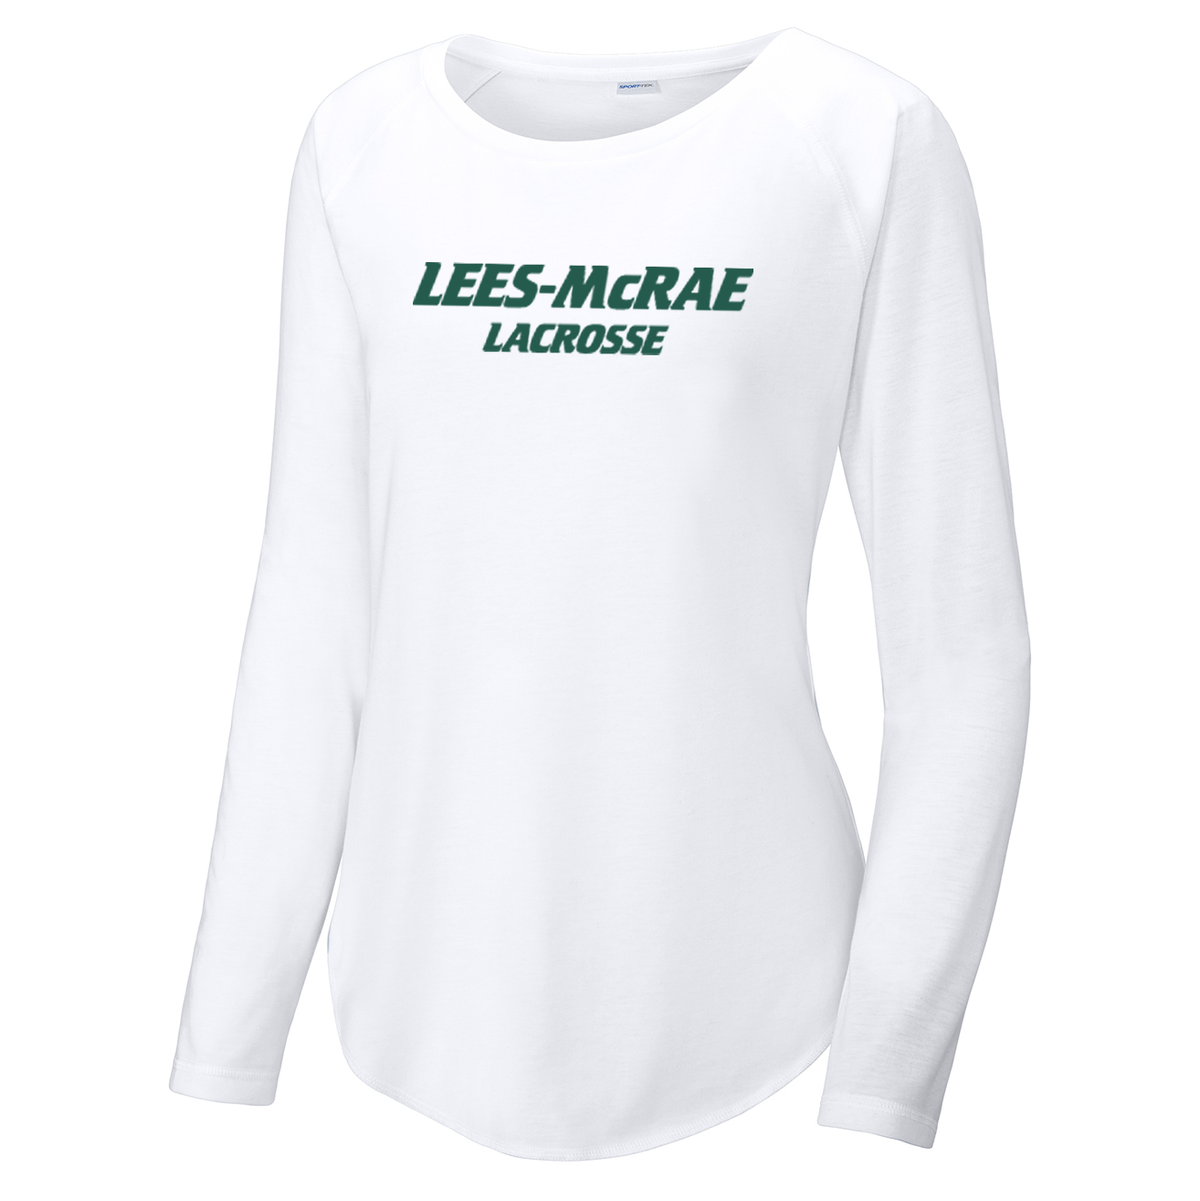 LMC Men's Lacrosse Women's Raglan Long Sleeve CottonTouch